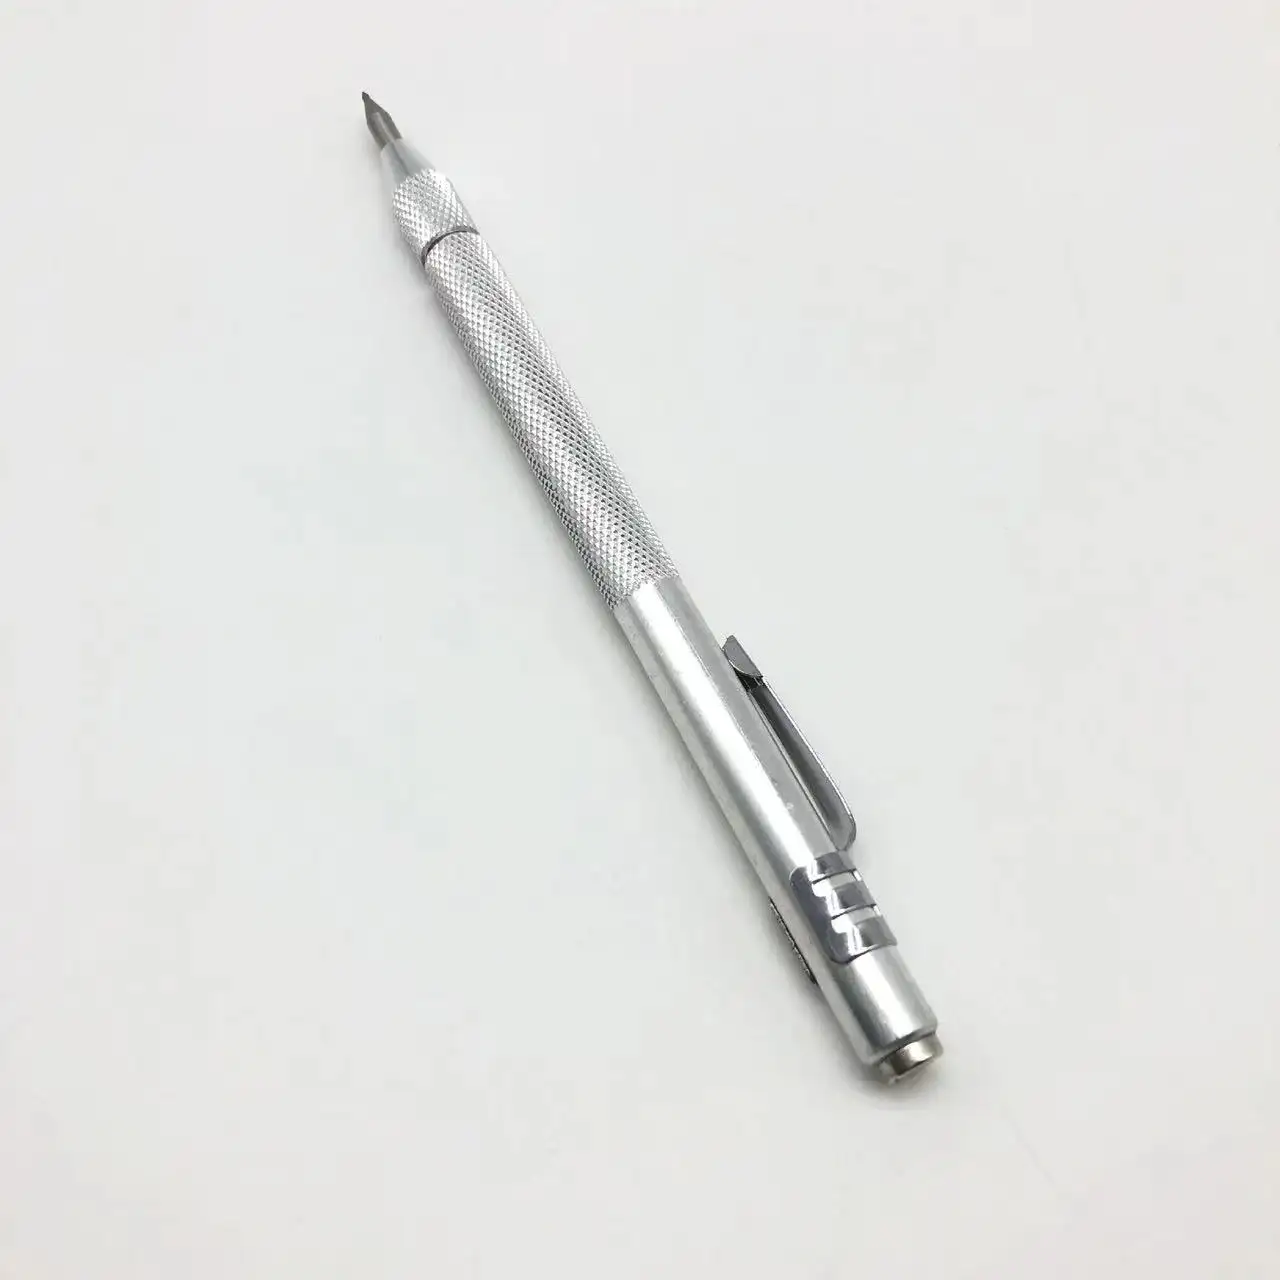 IVD-4041 Scriber kalem Tungsten karbür gravür kalem işaretleme oyma kazımalı işaretleyici aracı cam seramik Metal ahşap el aracı için